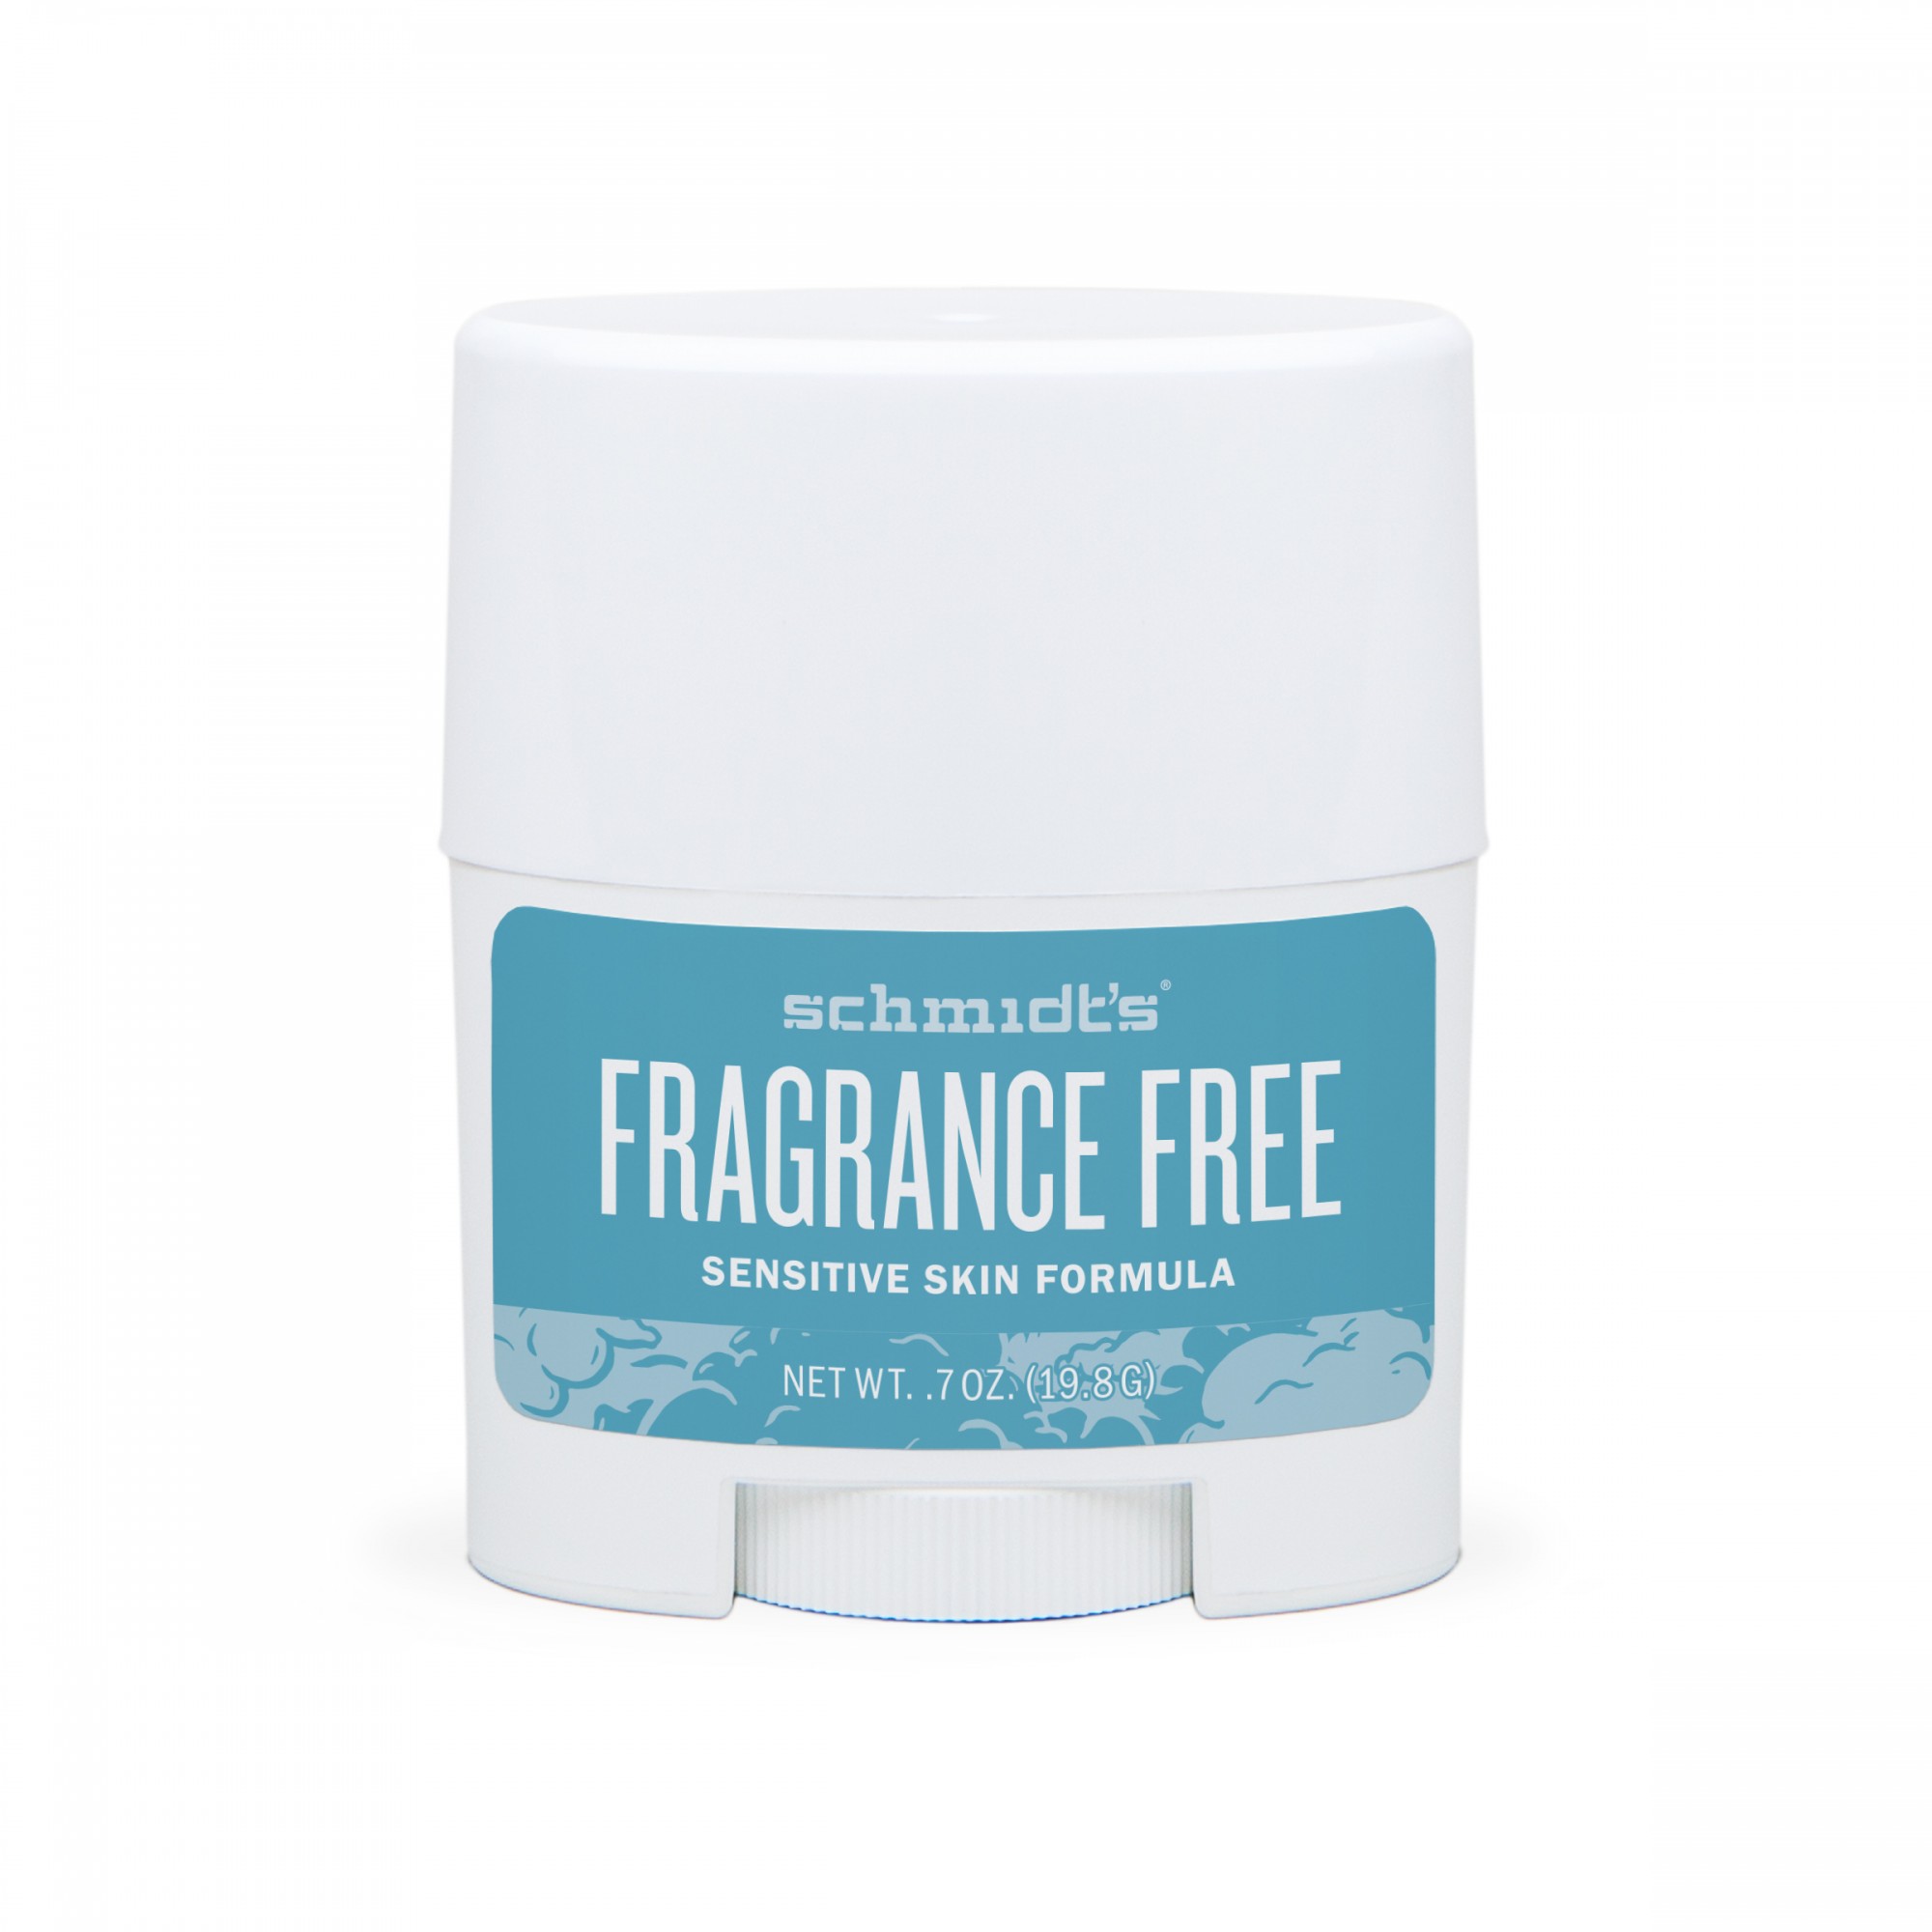 Troubled undskylde voldgrav Natural deo stick Fragrance Free. UPC 19962542411. Travel size.